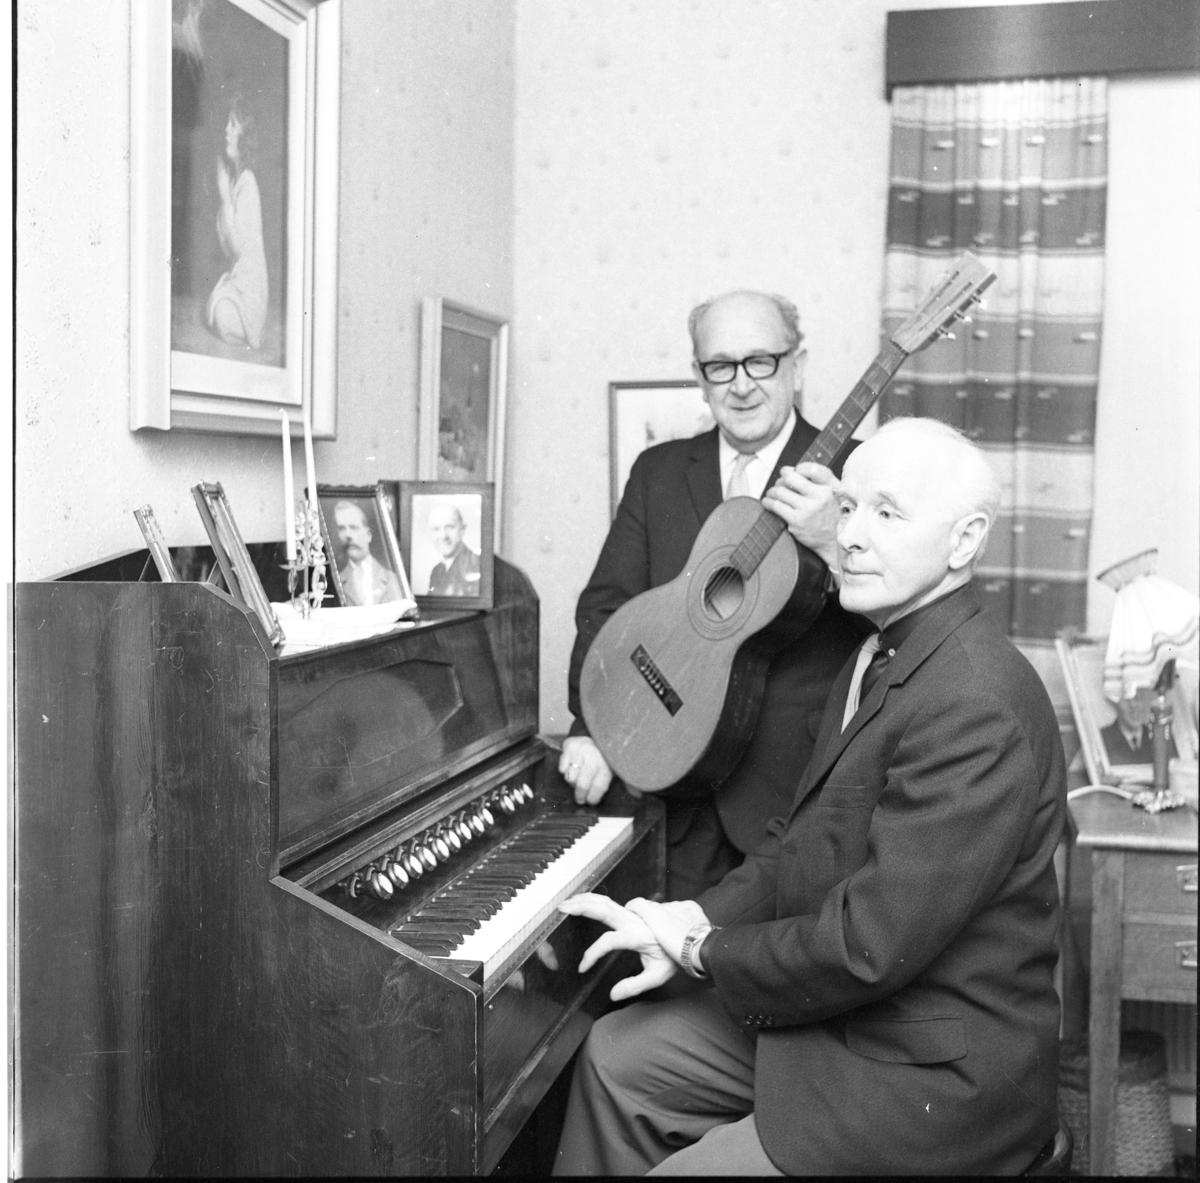 Carl Öst i glasögon står med en gitarr intill Martin Persson som sitter vid en orgel. På orgeln står en ljusstake med två ljus samt ramade porträttfotografier av män.